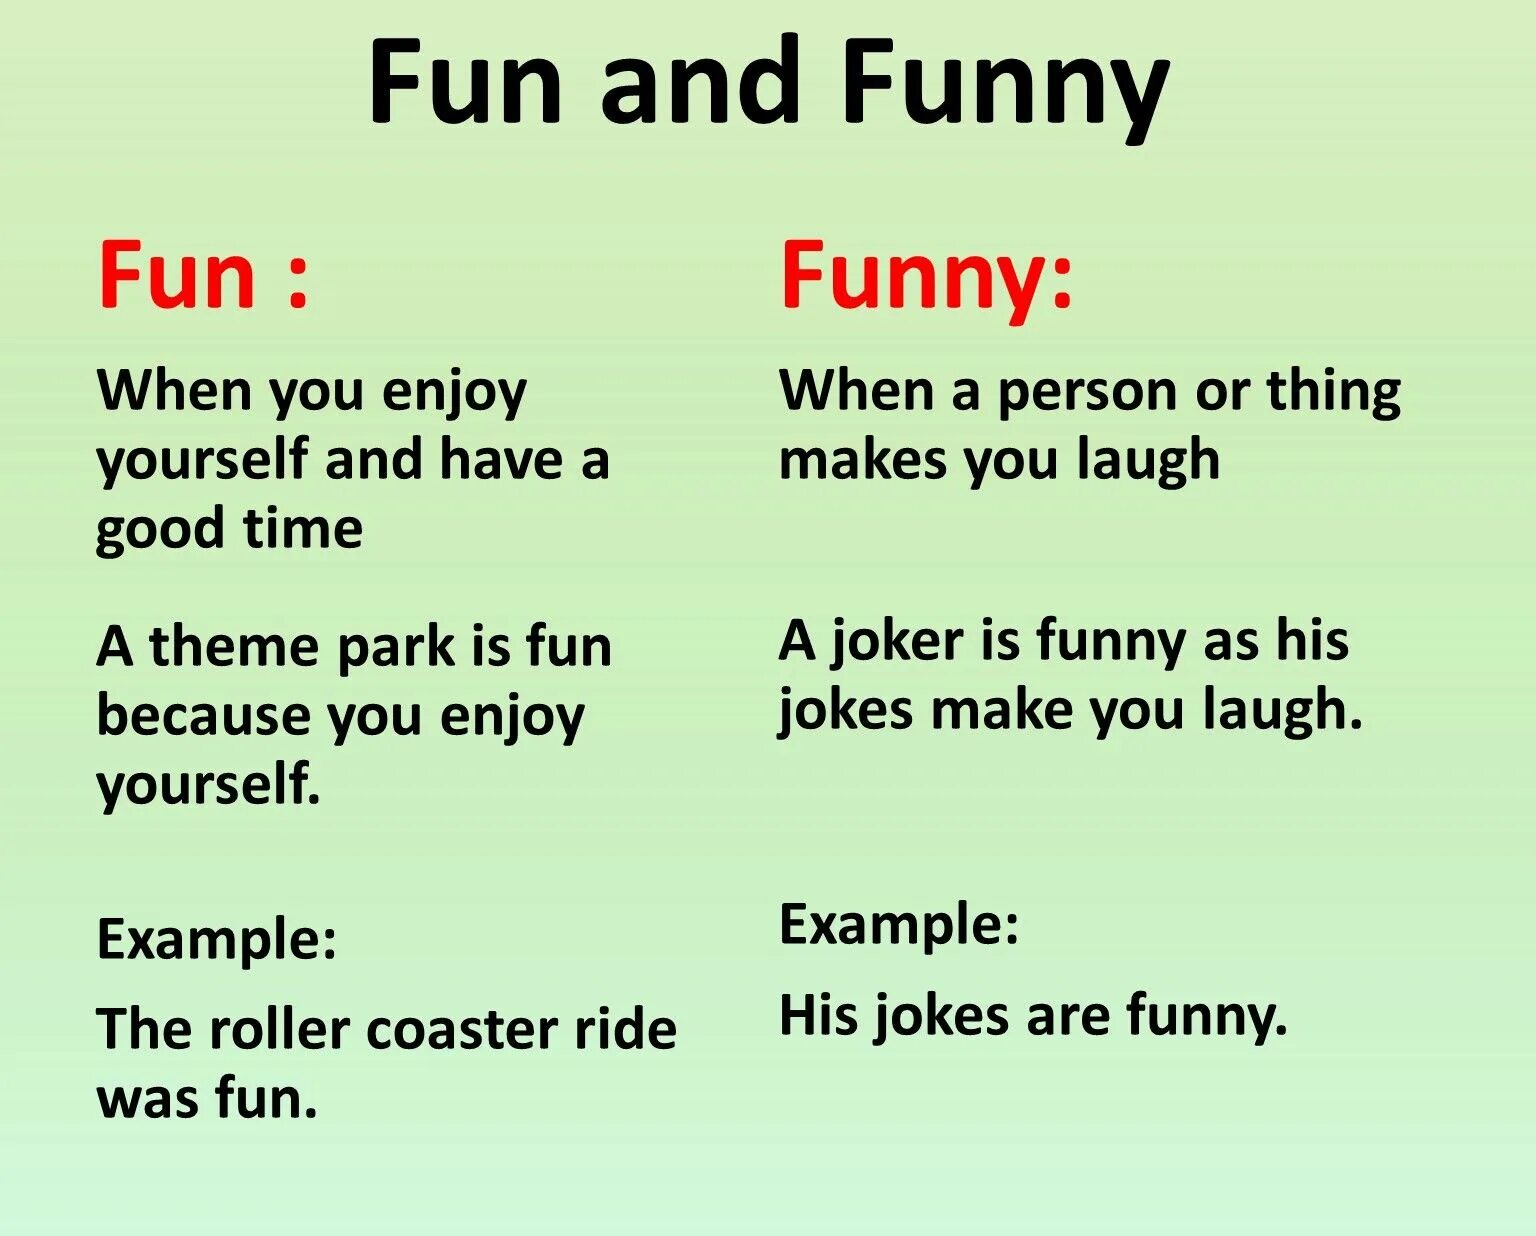 Reading jokes. Fun funny разница. Amuse entertain разница. Fun and funny difference. Funny vs fun разница.